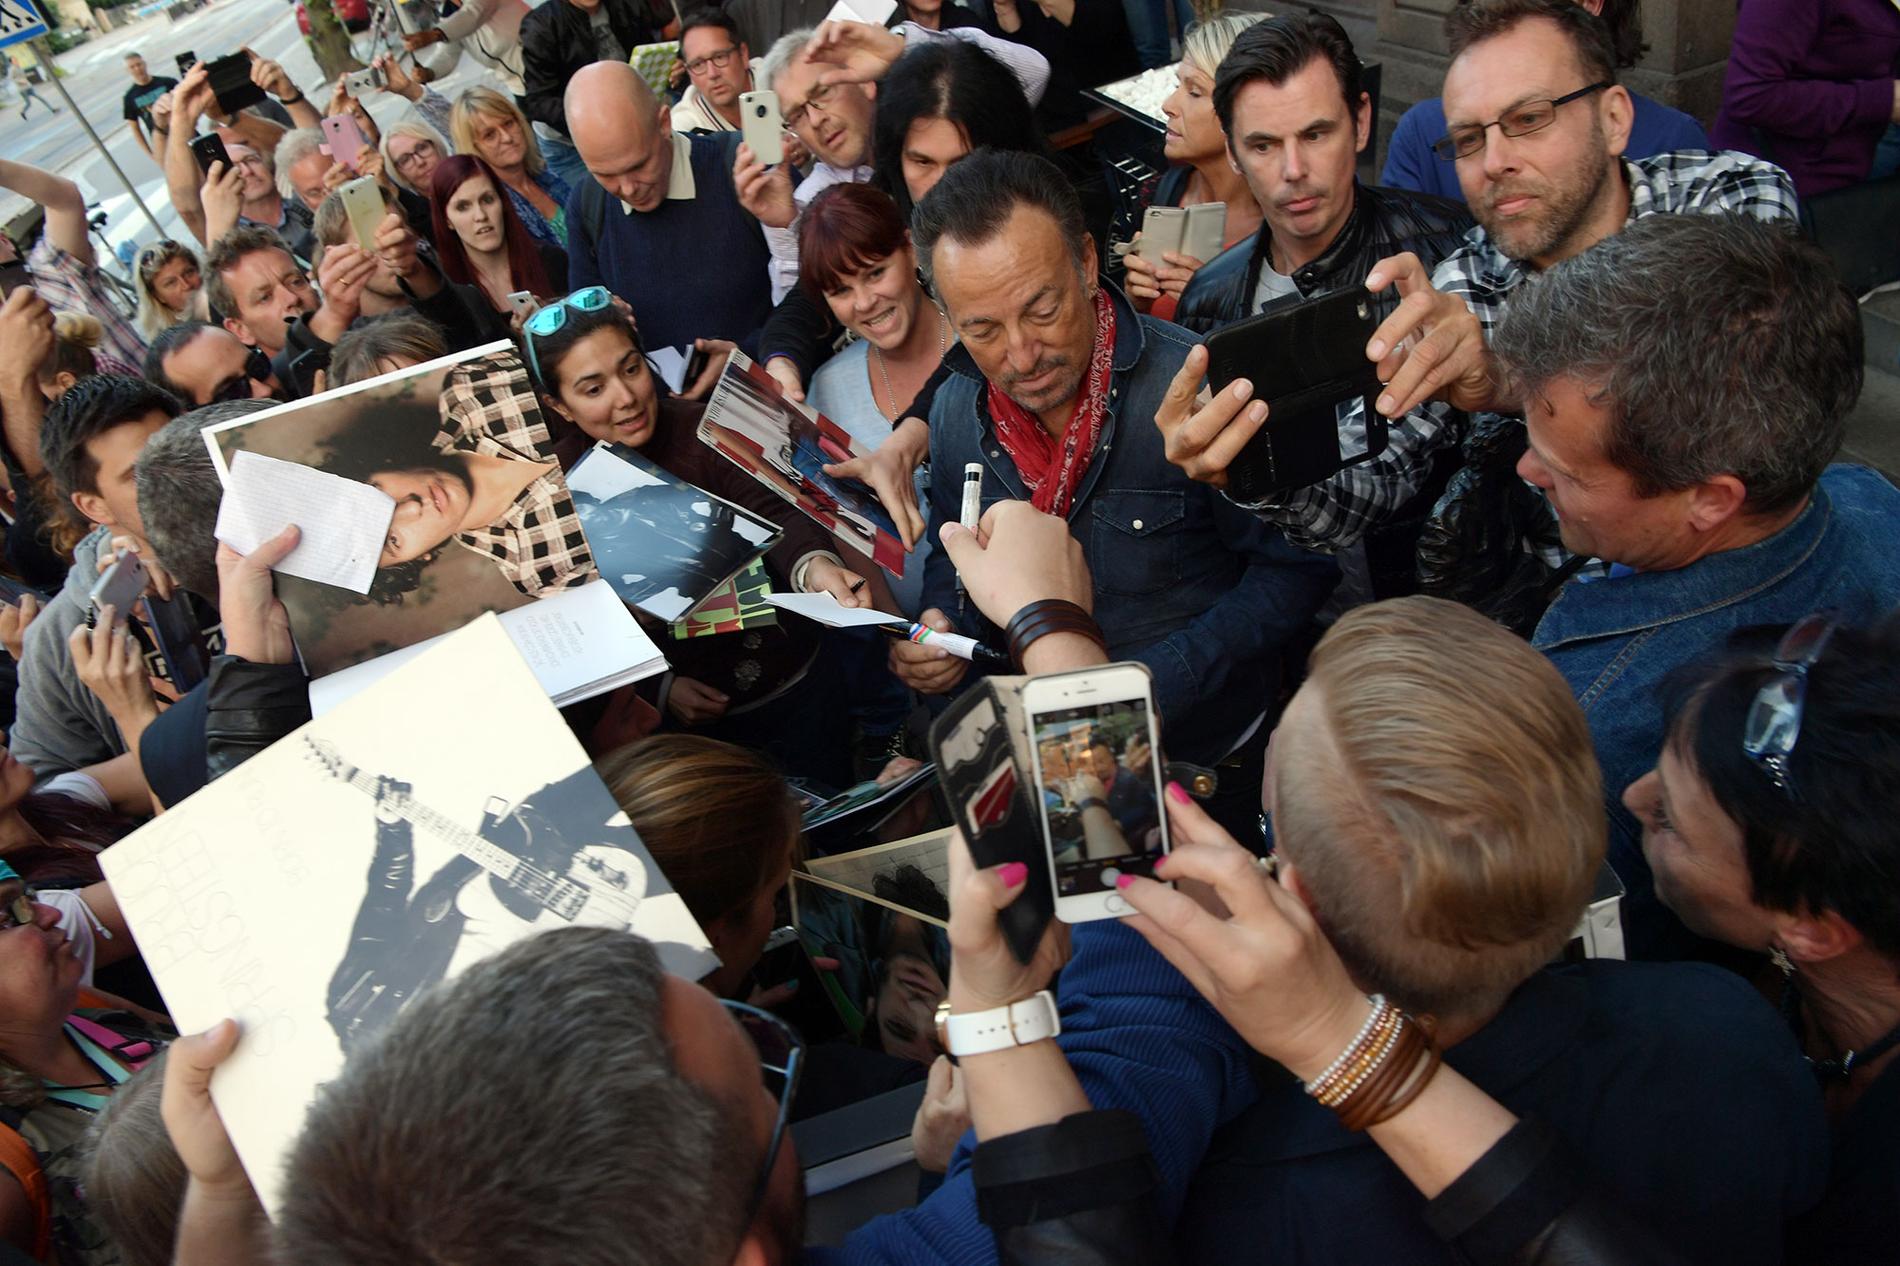 När Bruce Springsteen spelade i Göteborg i juni blev det kaos så fort han visade sig utanför hotellet.